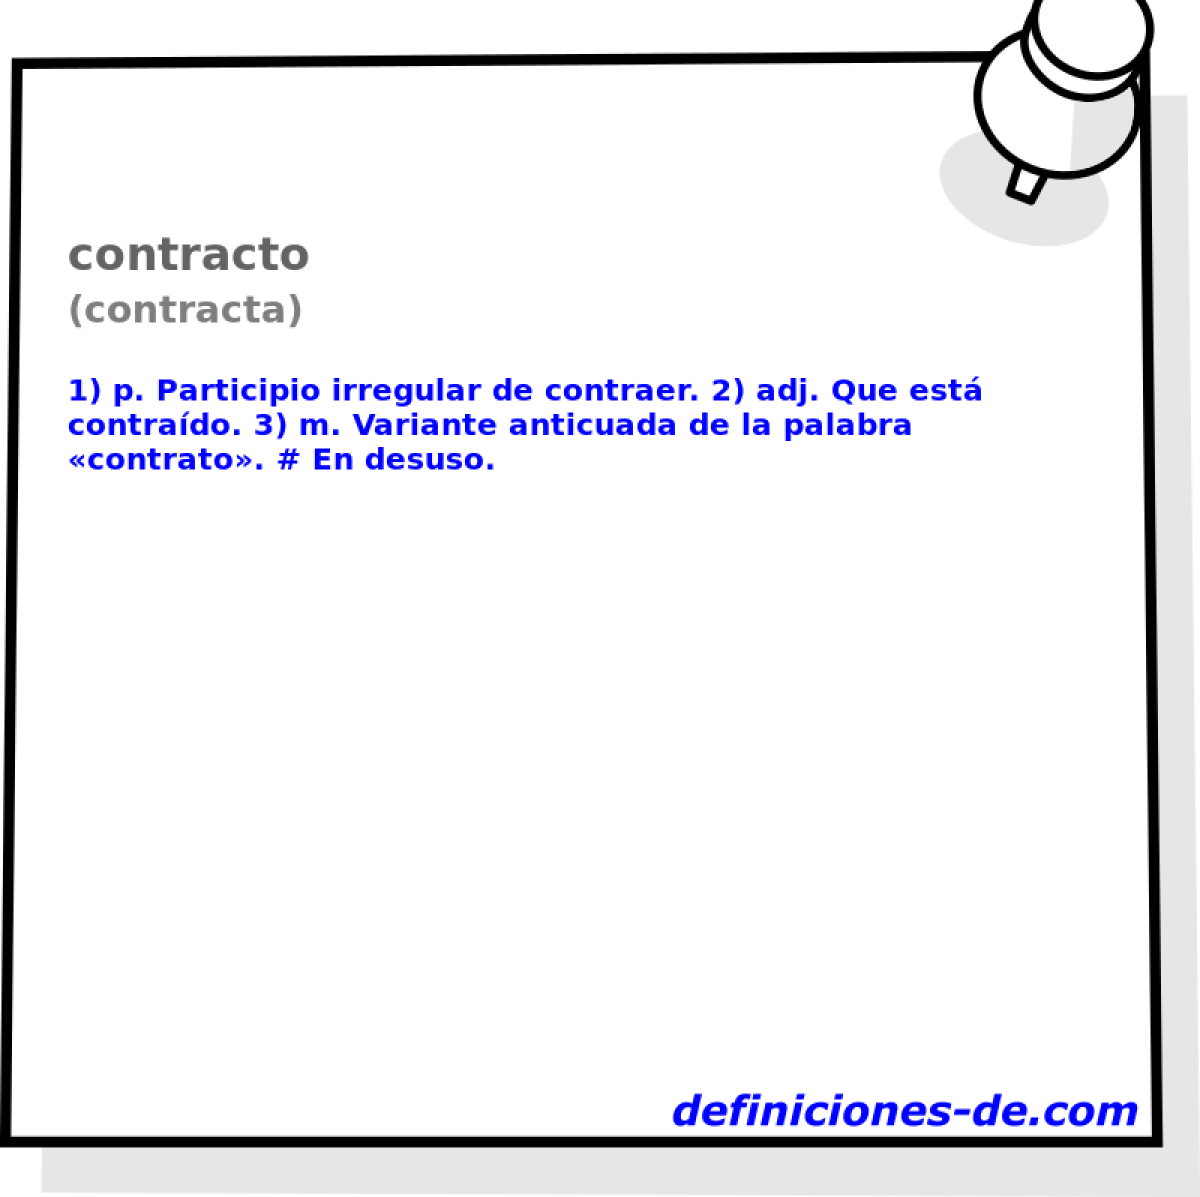 contracto (contracta)